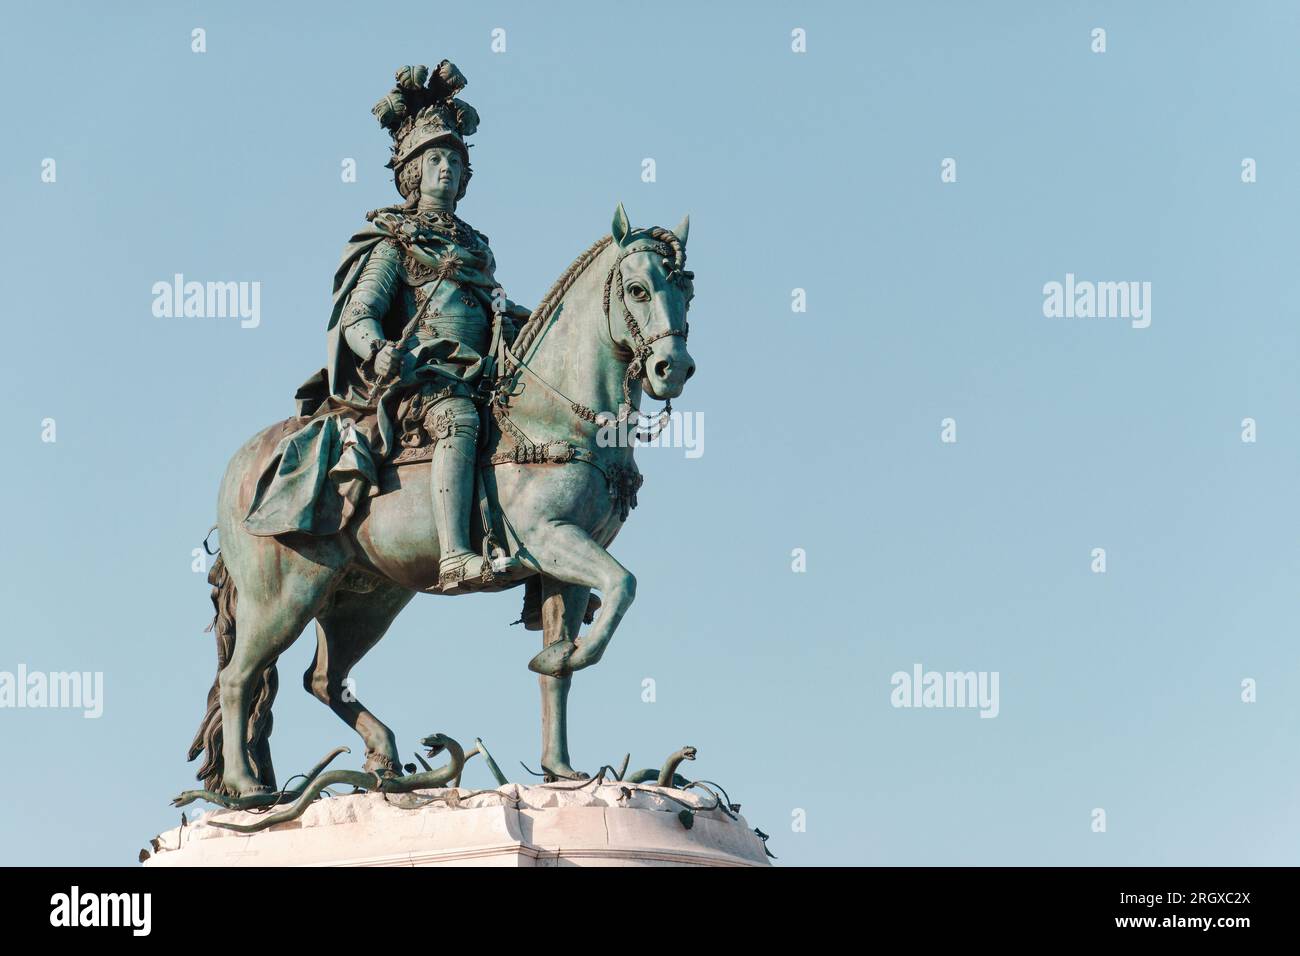 Statue historique du roi José I sur la place du commerce à Lisbonne, Portugal. Statue équestre, inaugurée en 1775. Copiez l'espace, placez votre texte. Banque D'Images